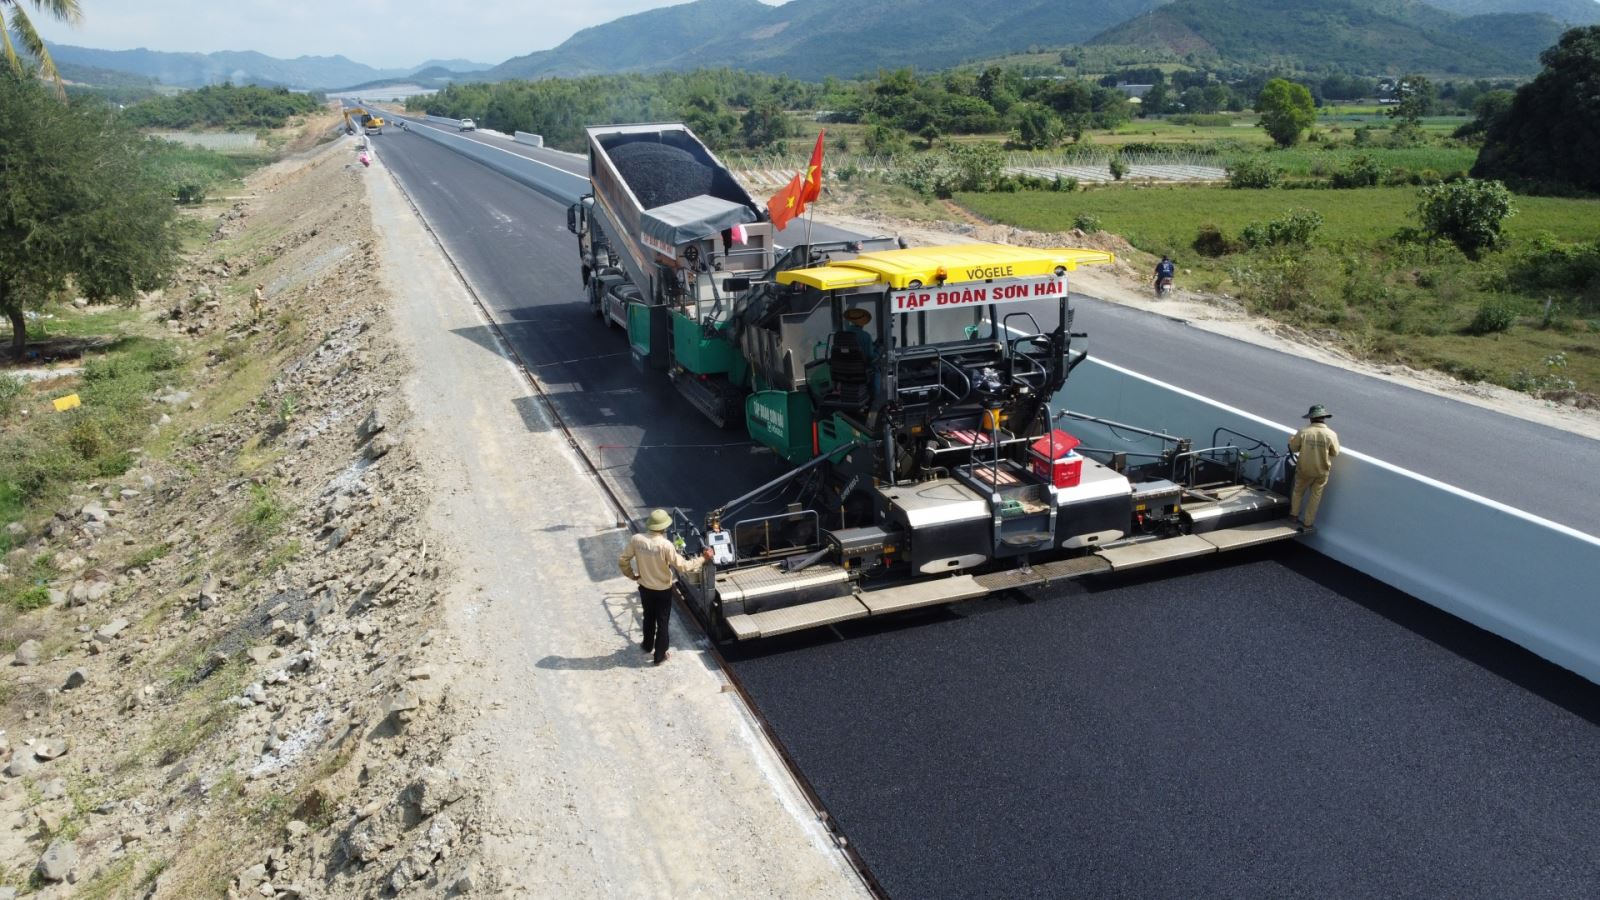 Lần đầu tiên Việt Nam có cao tốc được bảo hành tới 10 năm: Thiết bị tiên tiến nào thi công mặt đường?- Ảnh 3.